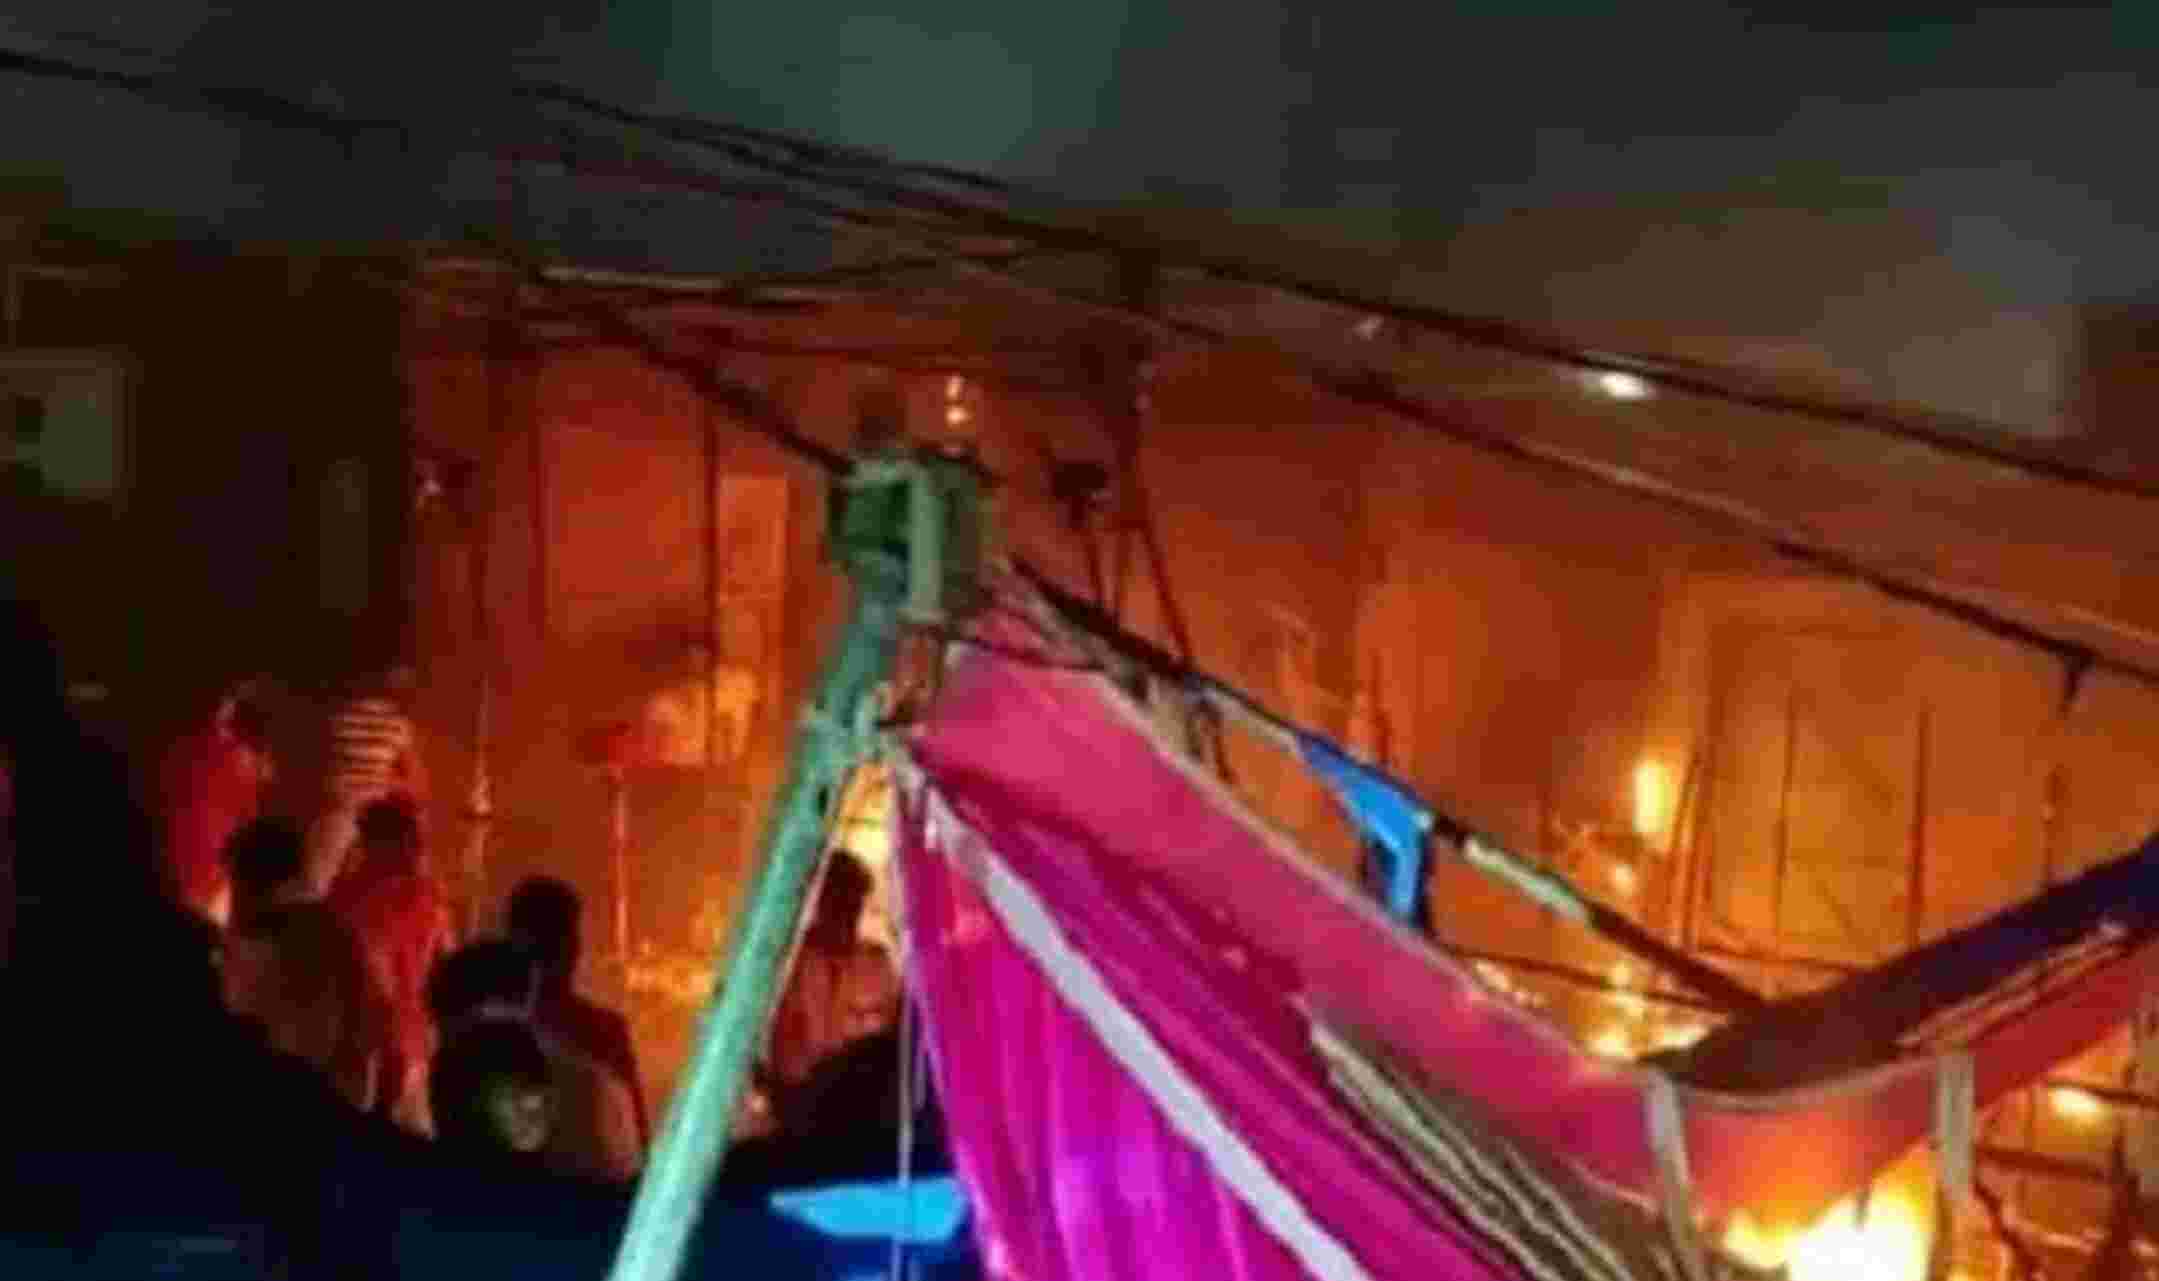 Jodhpur News : शादी समारोह में गैस सिलेंडर विस्फोट से दर्दनाक हादसा, 2 बच्चे सहित 4 की मौत, दूल्हे के माता-पिता और बहन समेत 60 झुलसे प्रतीकात्मक चित्र।